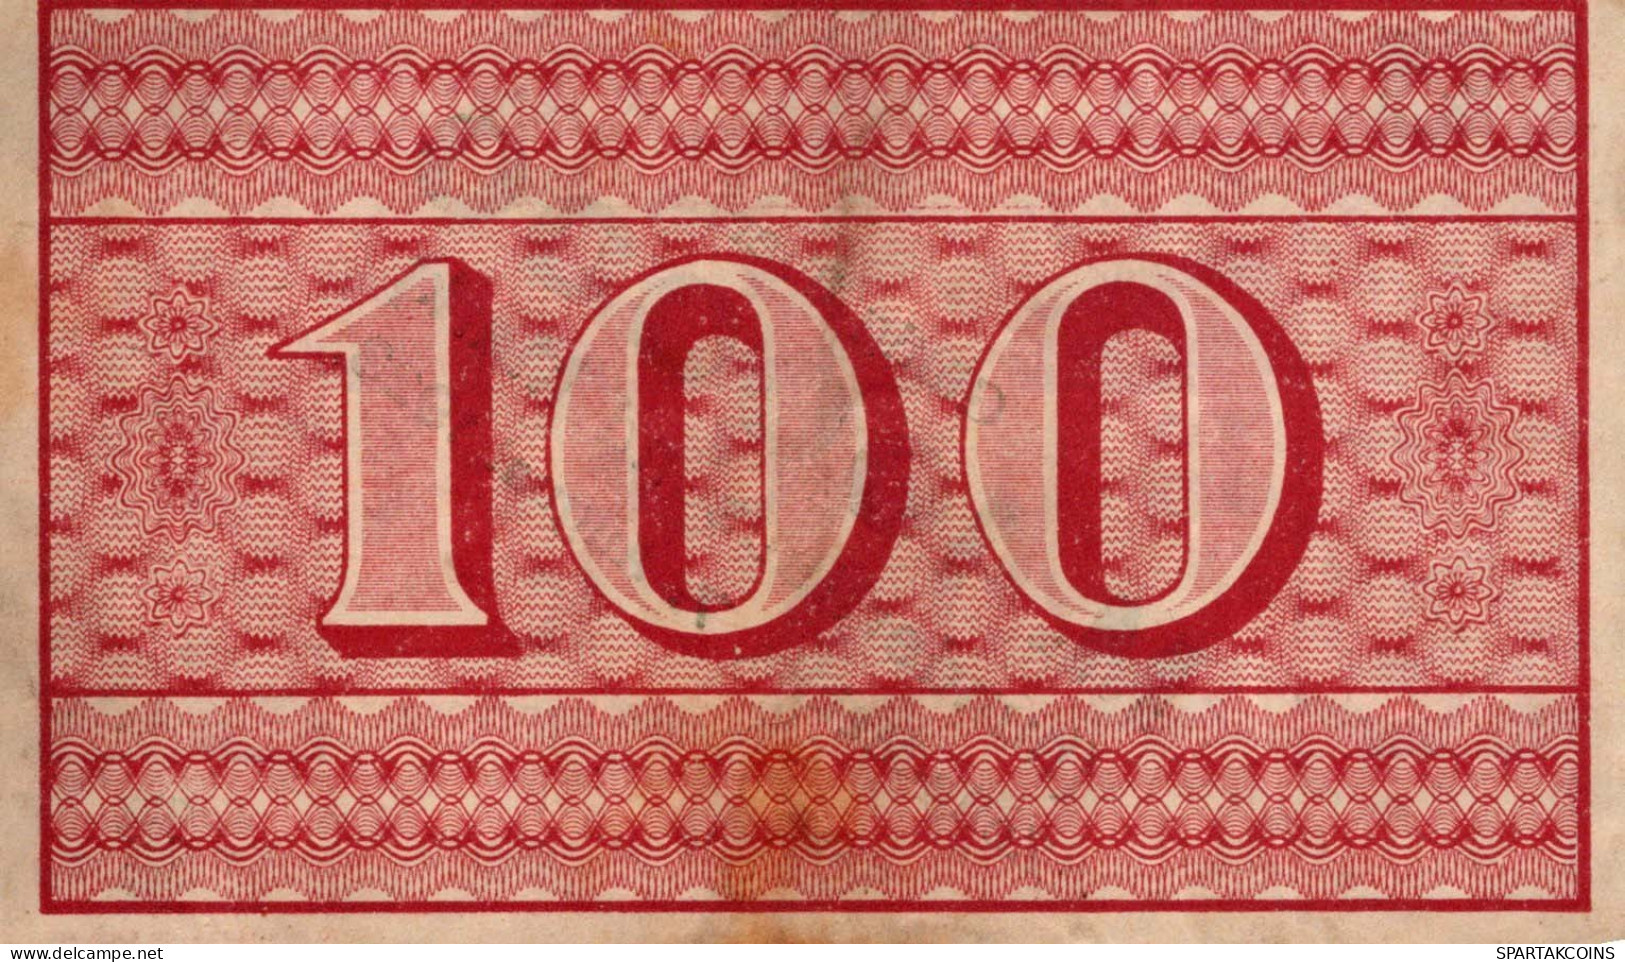 100 MARK 1922 Stadt ZELLA-MEHLIS Thuringia DEUTSCHLAND Notgeld Papiergeld Banknote #PK856 - [11] Emissions Locales